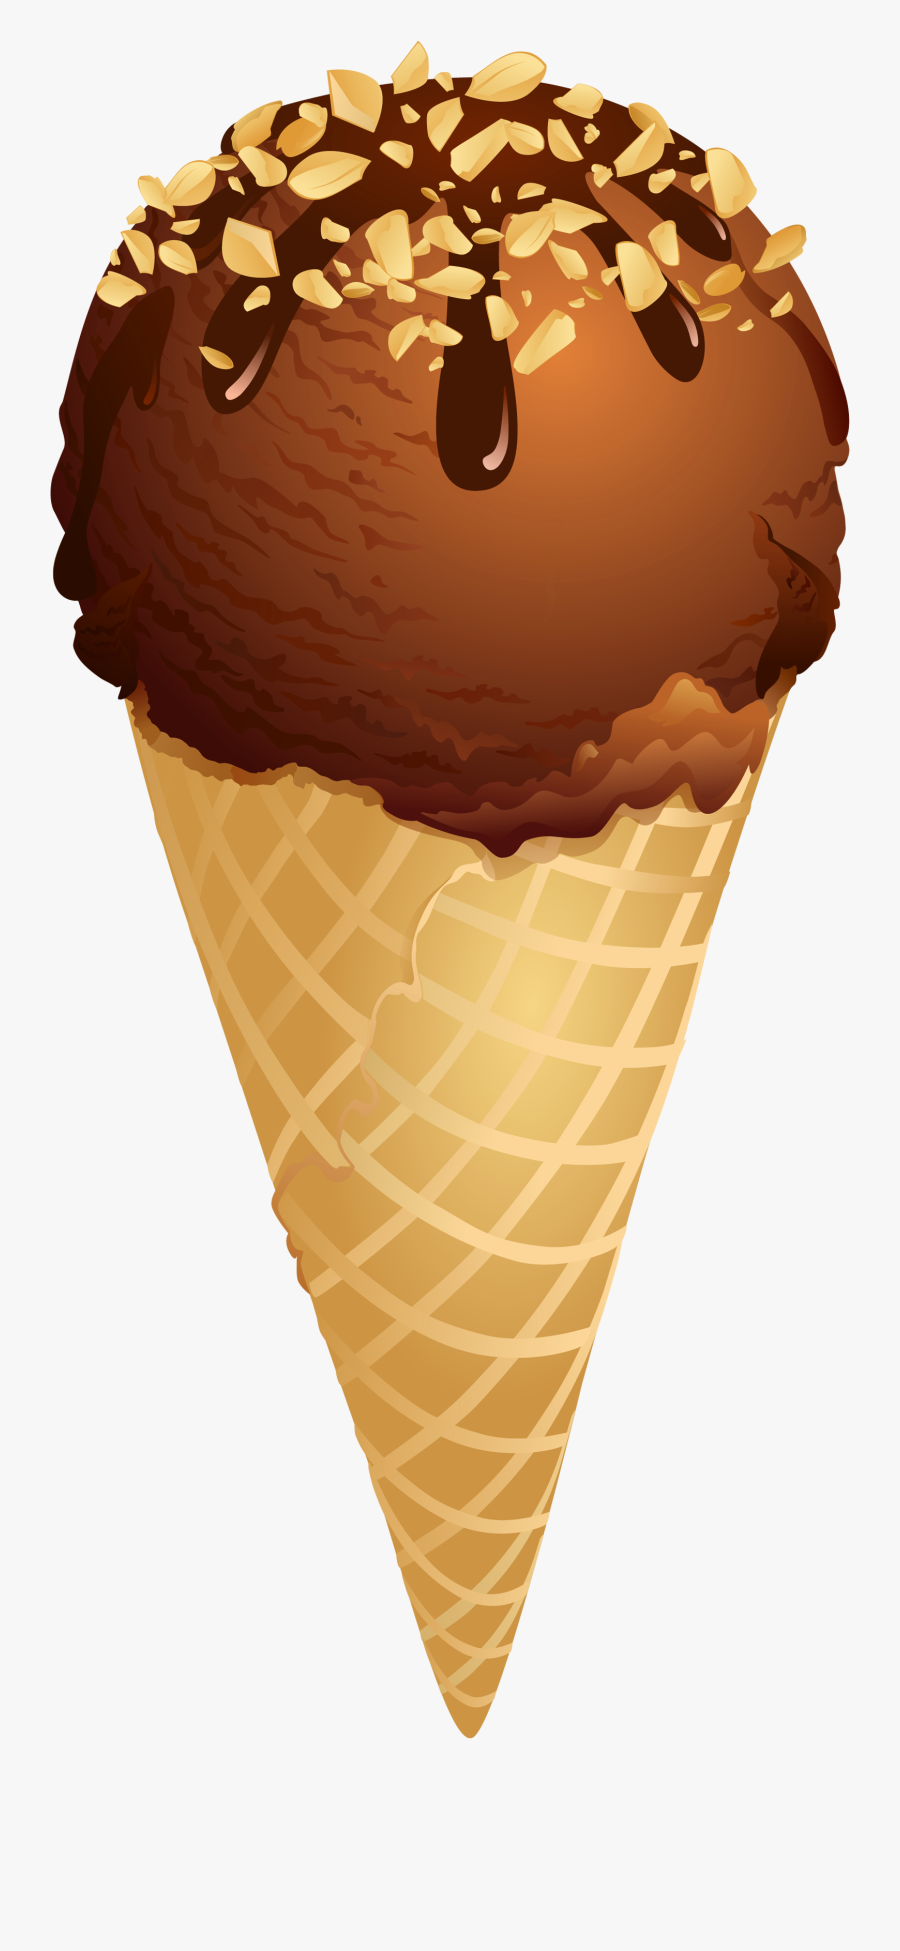 Clipart Of Ice Cream Cone - Chocolate Ice Cream Clipart, Transparent Clipart